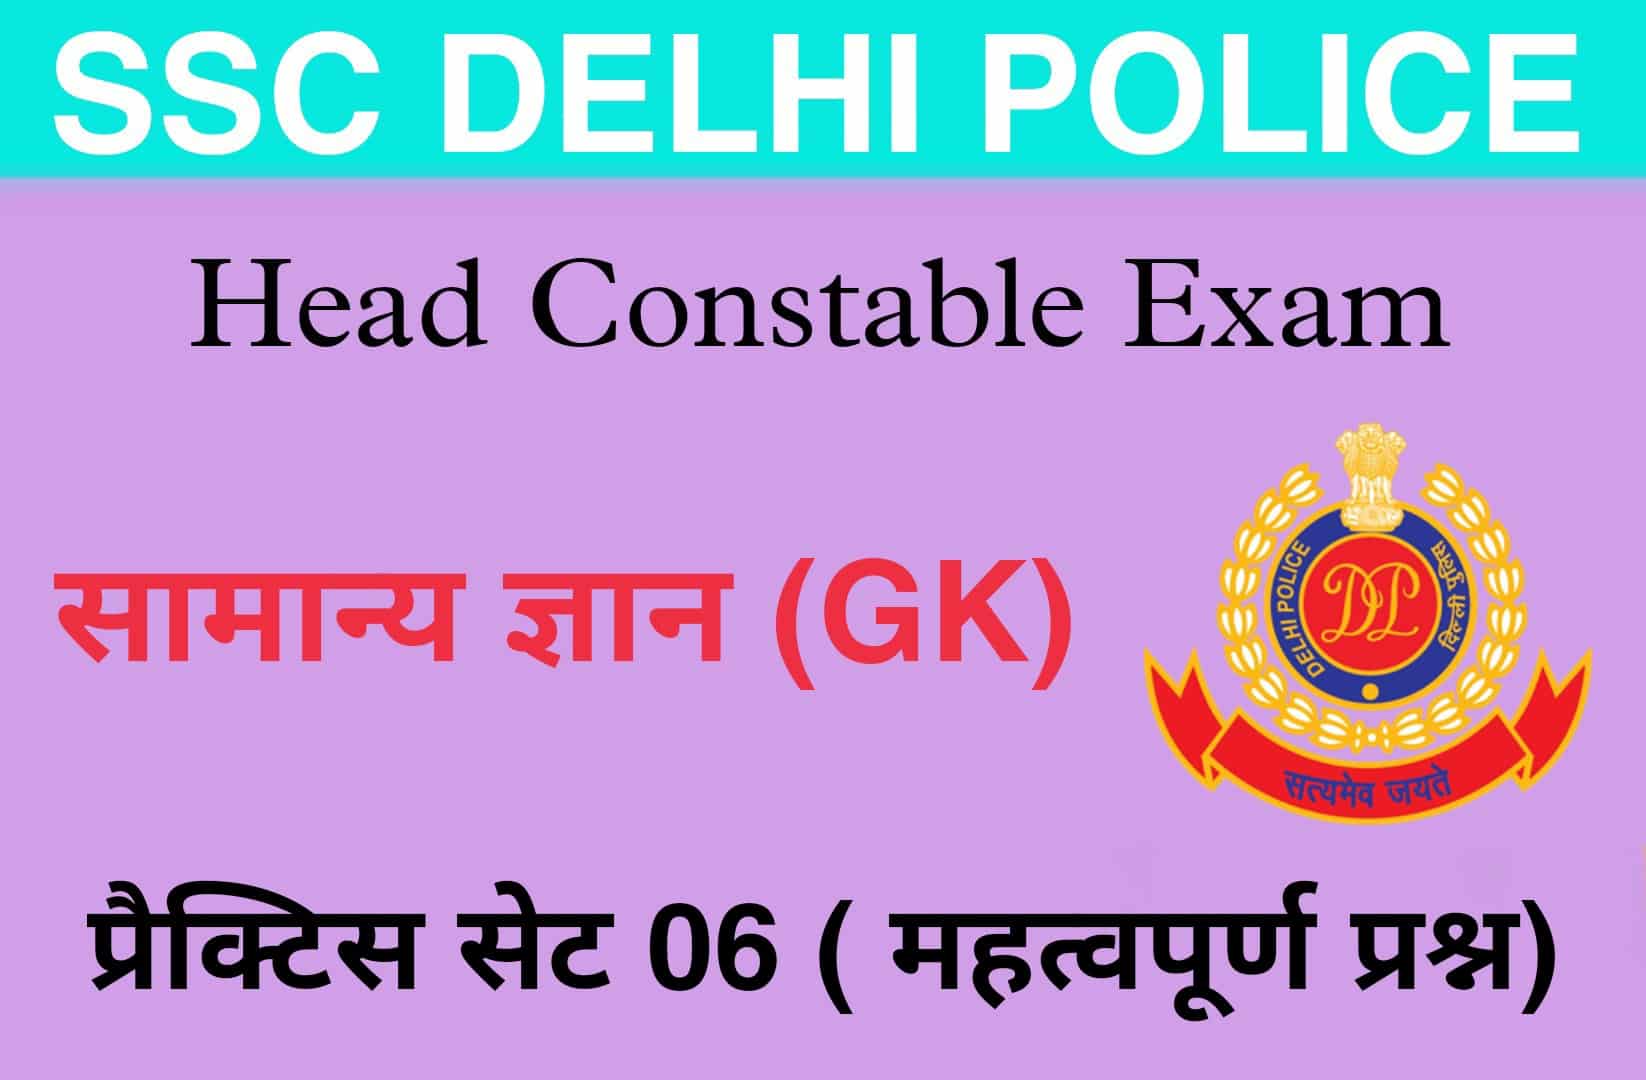 SSC Delhi Police Head Constable GK Practice Set 06 | परीक्षा में पूछें जाने वाले सामान्य ज्ञान के महत्वपूर्ण प्रश्न, पढ़ें